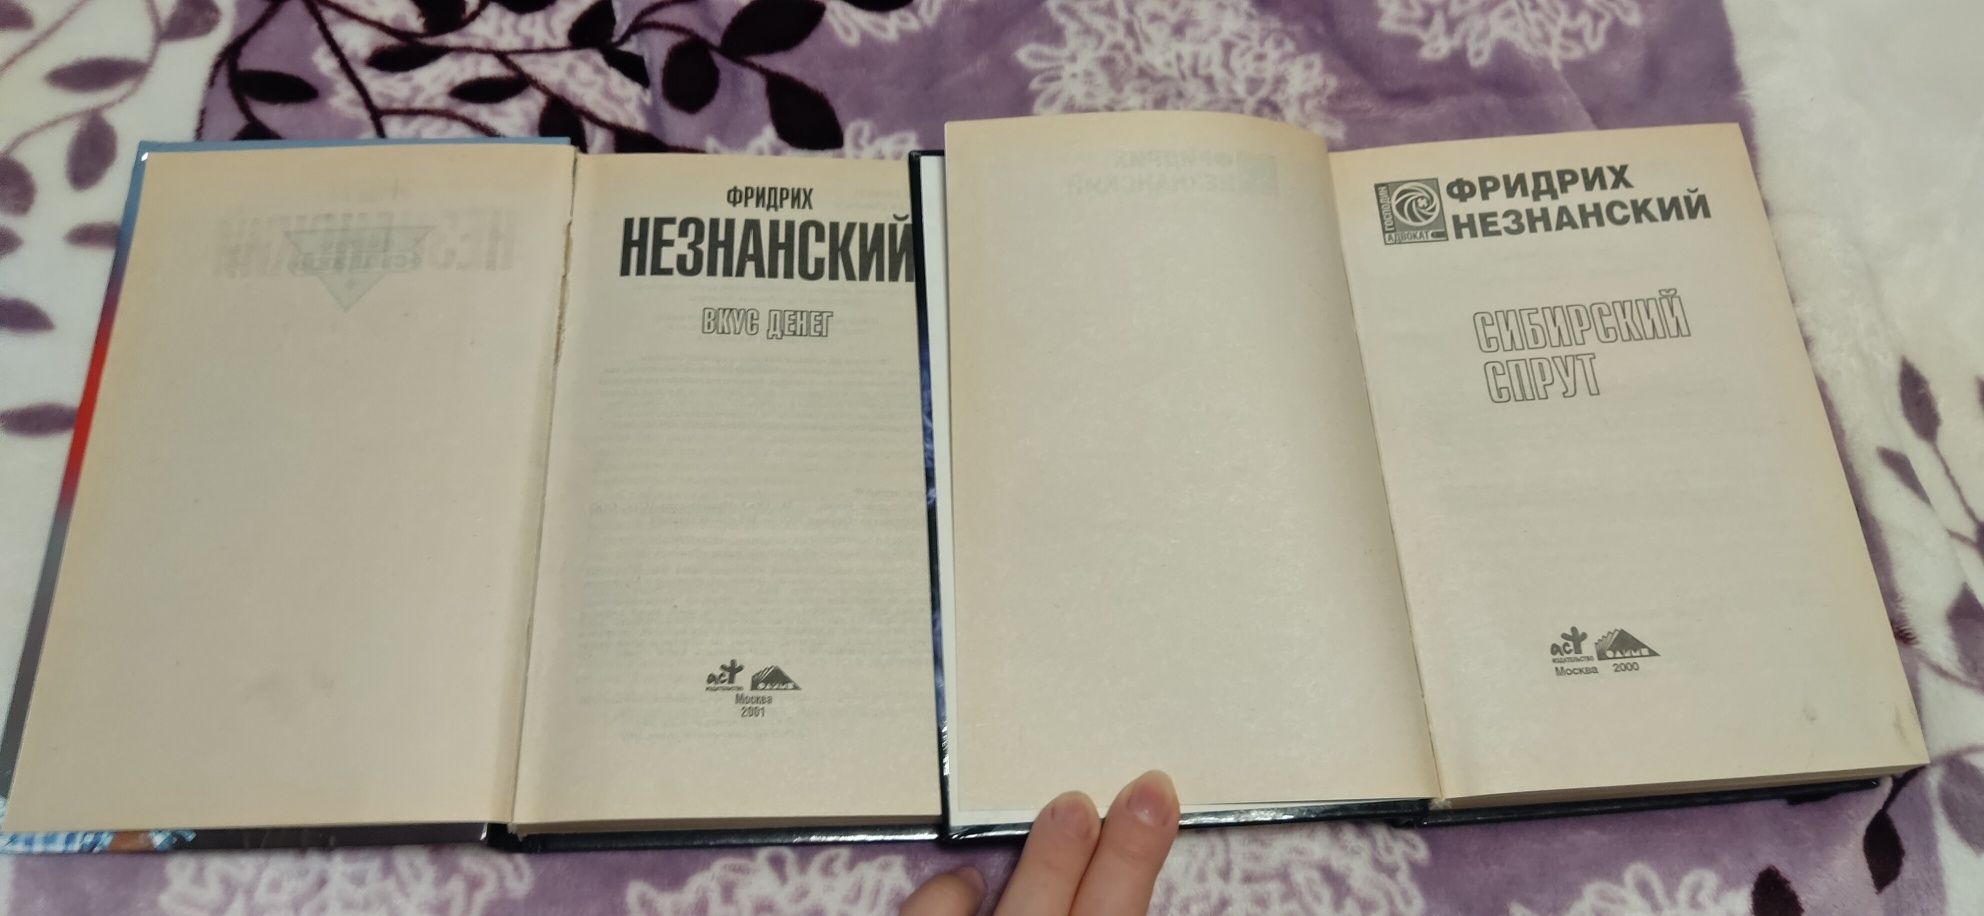 Фридрих Незнанский 2 книги